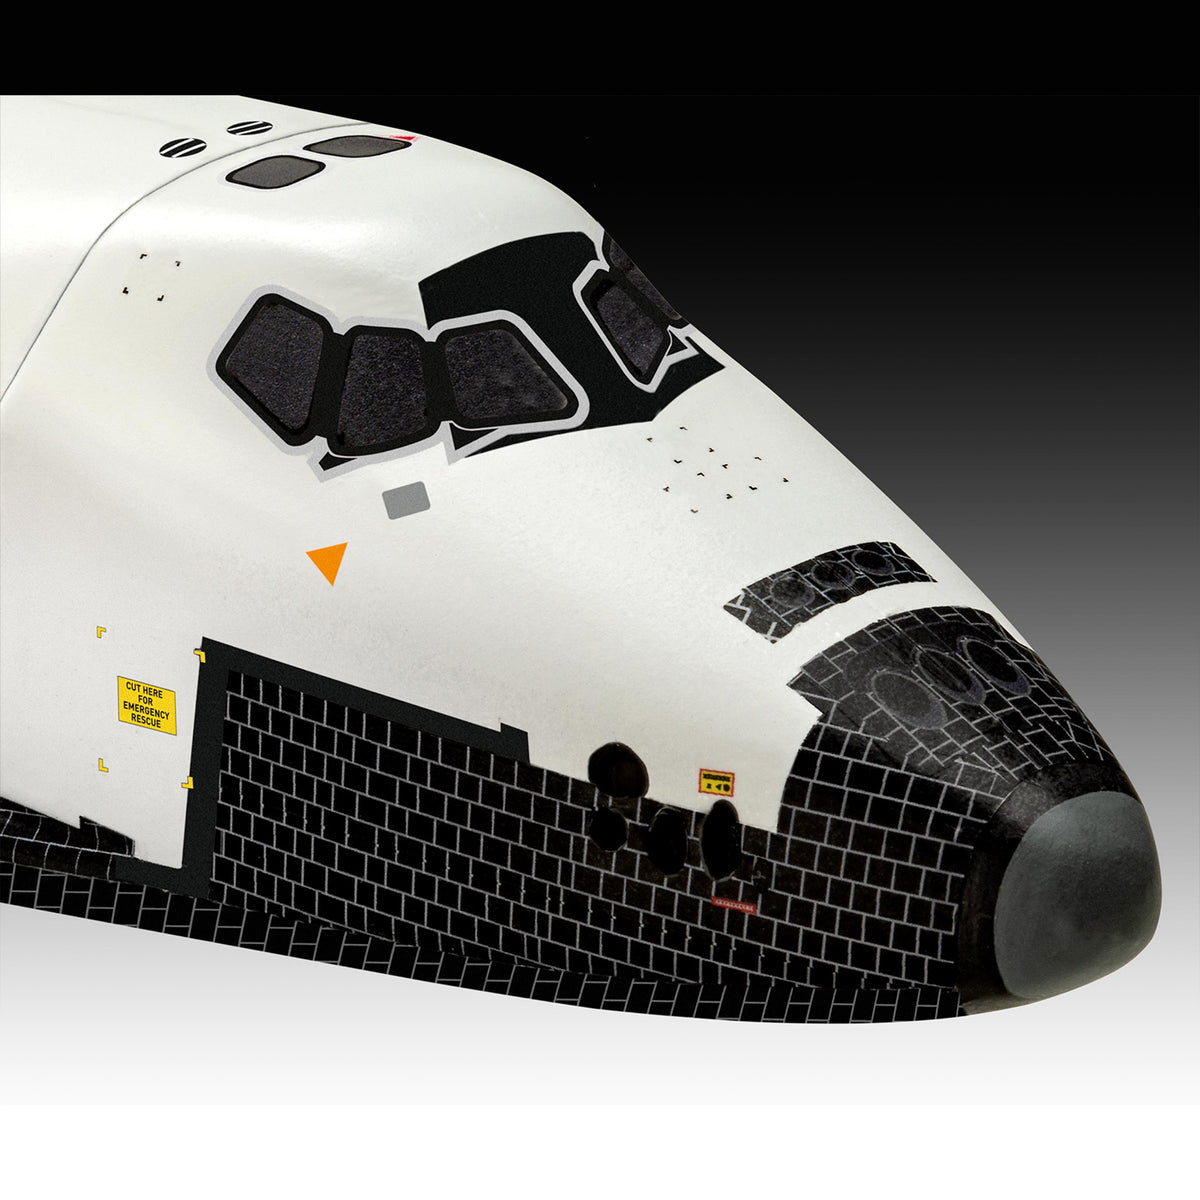 James Bond Space Shuttle Model Kit - Moonraker Edition - By Revell